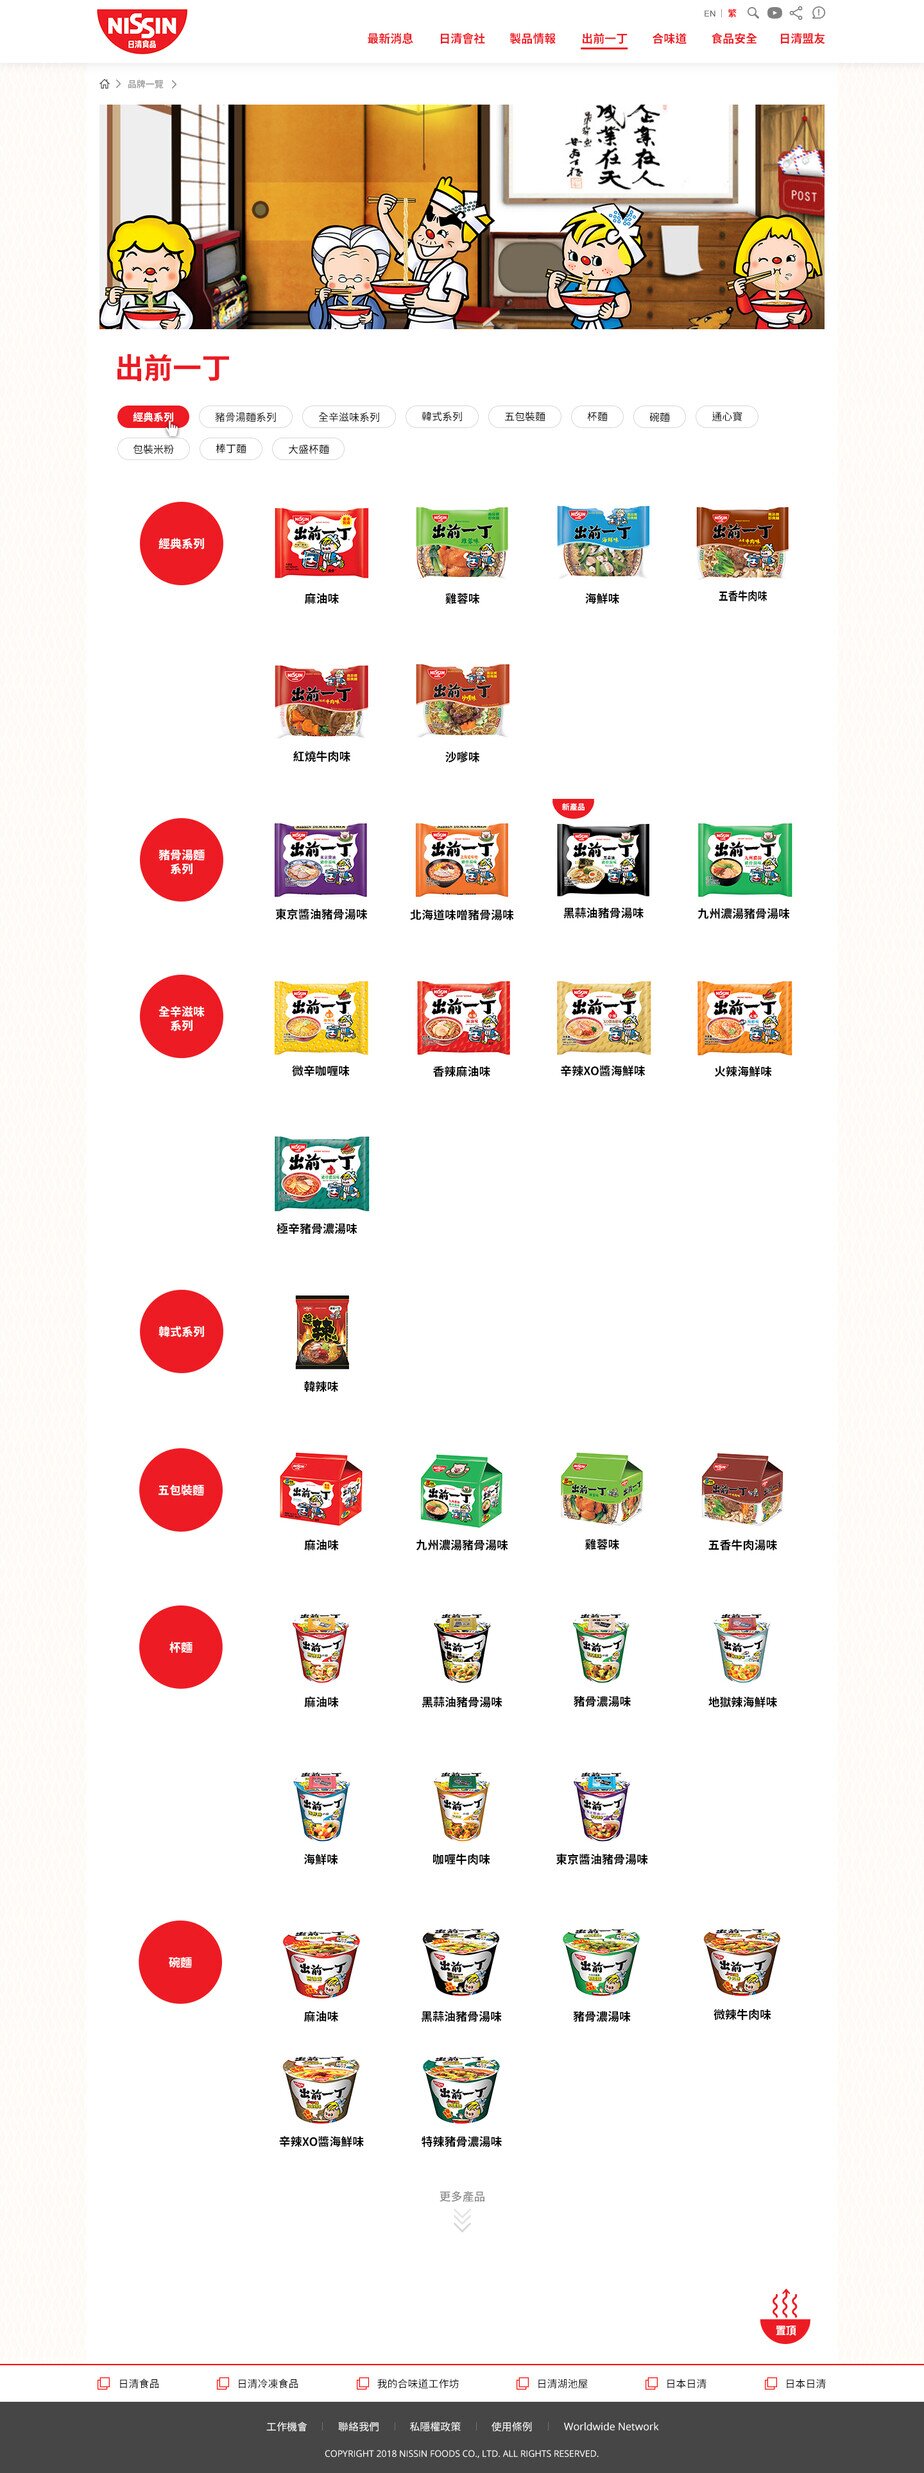 Nissin Foods HK website screenshot for desktop version 3 of 4